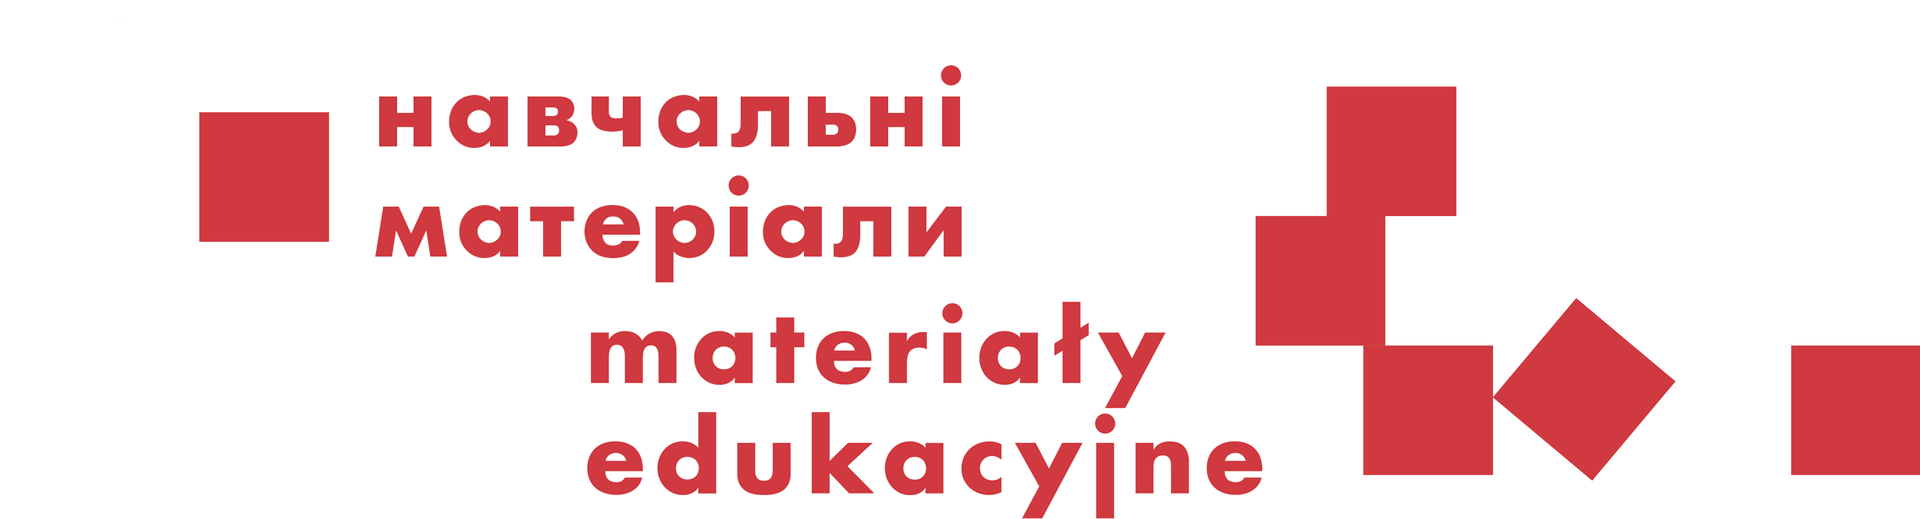 UKR materiały edukacyjne